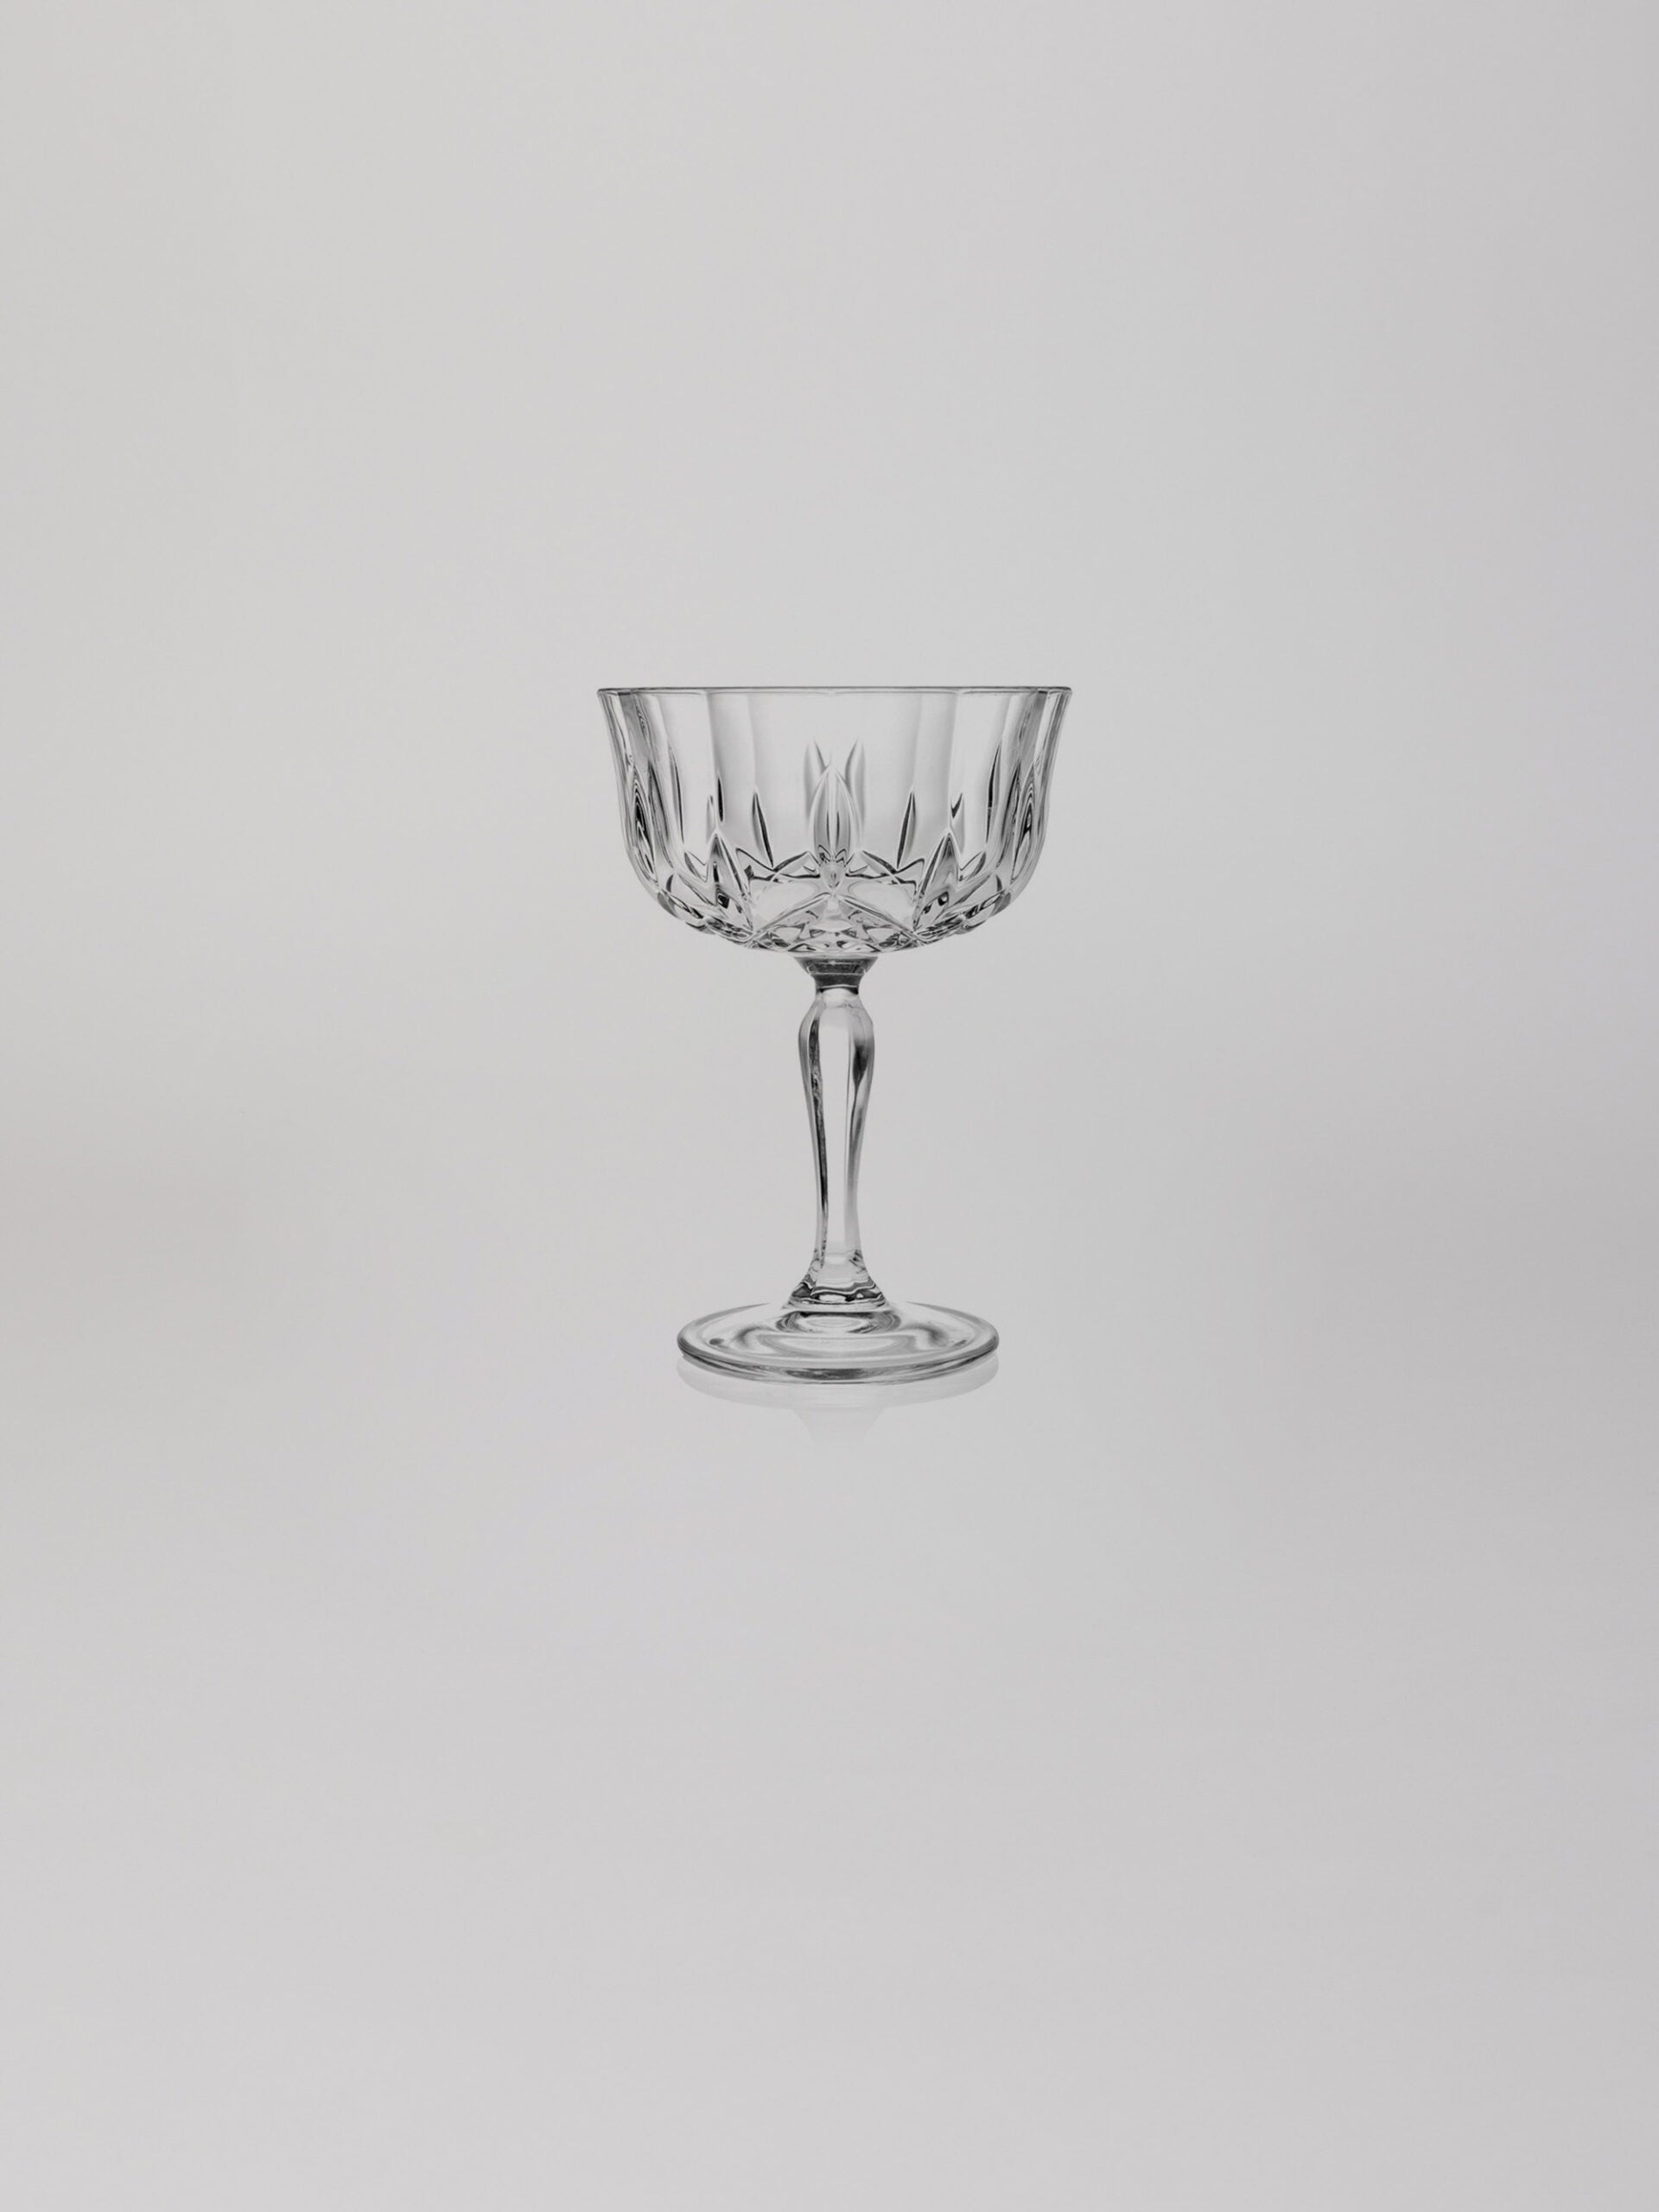 כוס שמפניה מעוצבת על רקע אפור בהיר בוהק